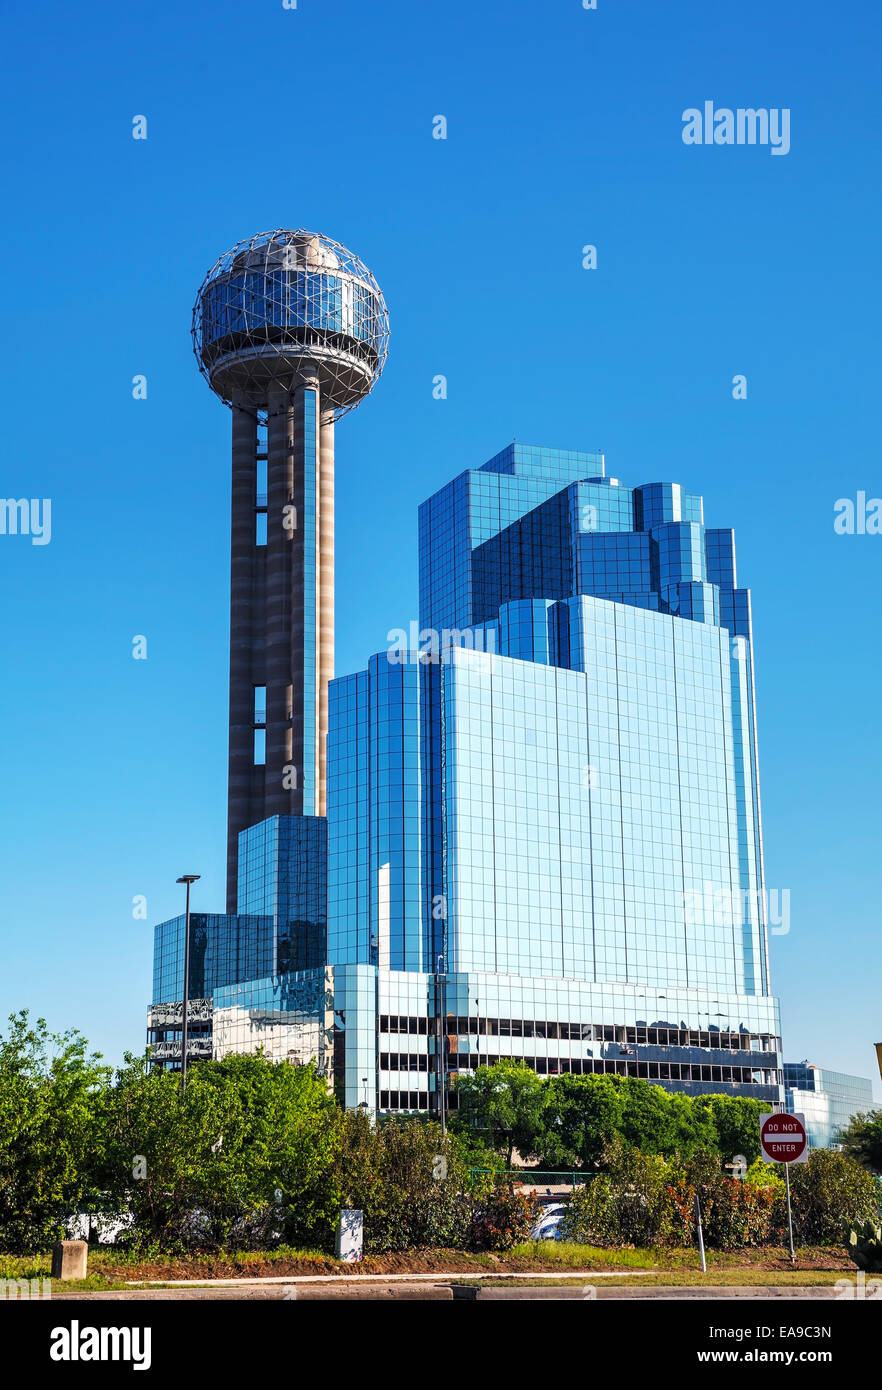 DALLAS - aprile 16: il centro della città di Dallas con Reunion Tower su Aprile 16, 2014 a Dallas, in Texas. Si tratta di un 561 piedi (171 m) Osservazione Foto Stock